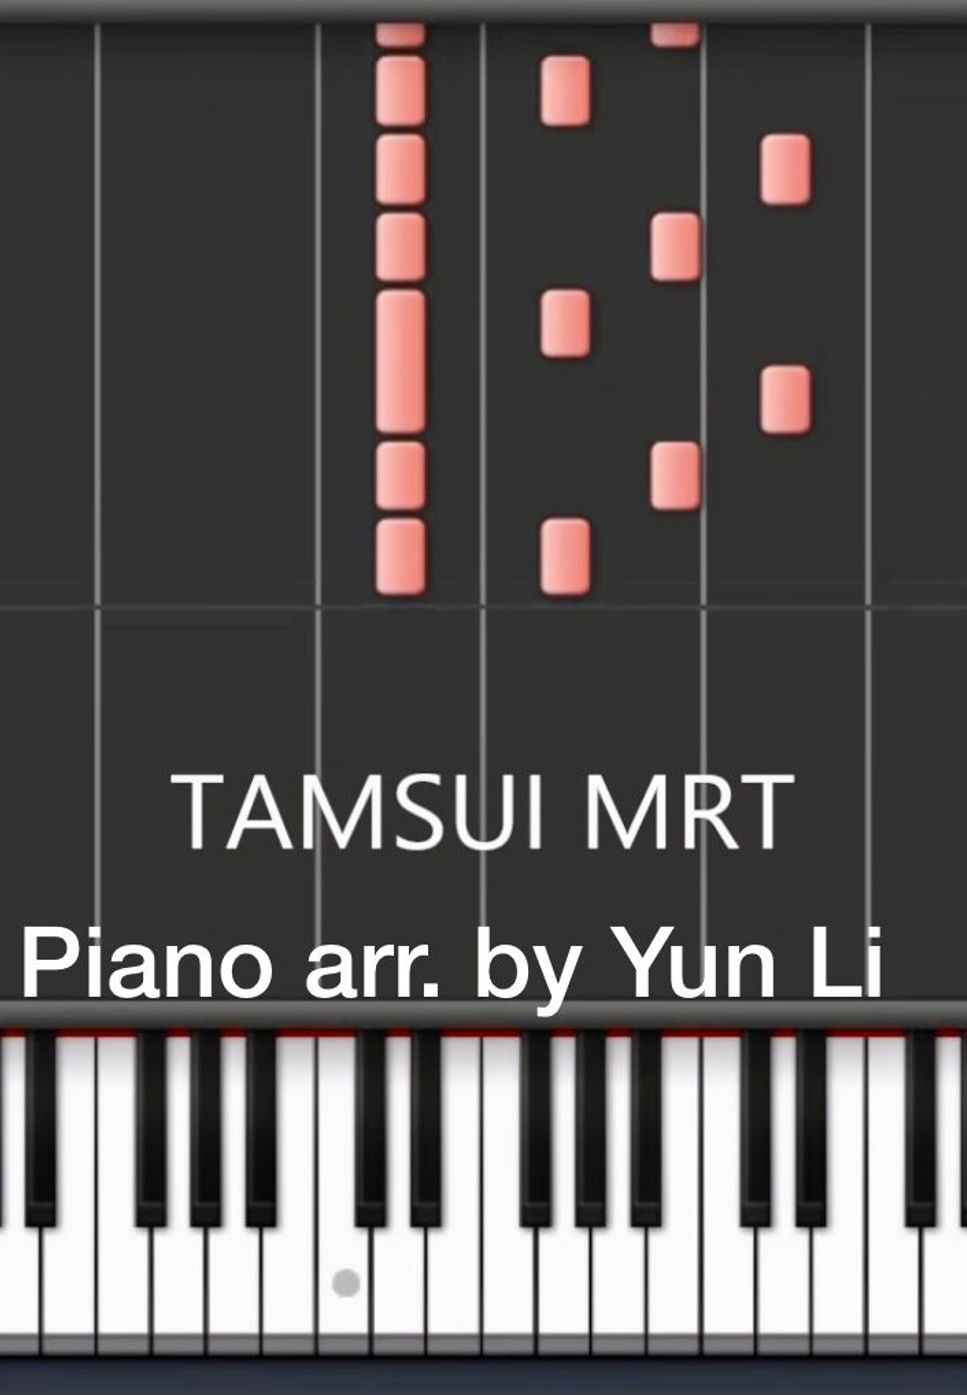 雷光夏 - 捷運淡水信義線(Tamsui MRT)進站音樂[piano cover] by Yun Li